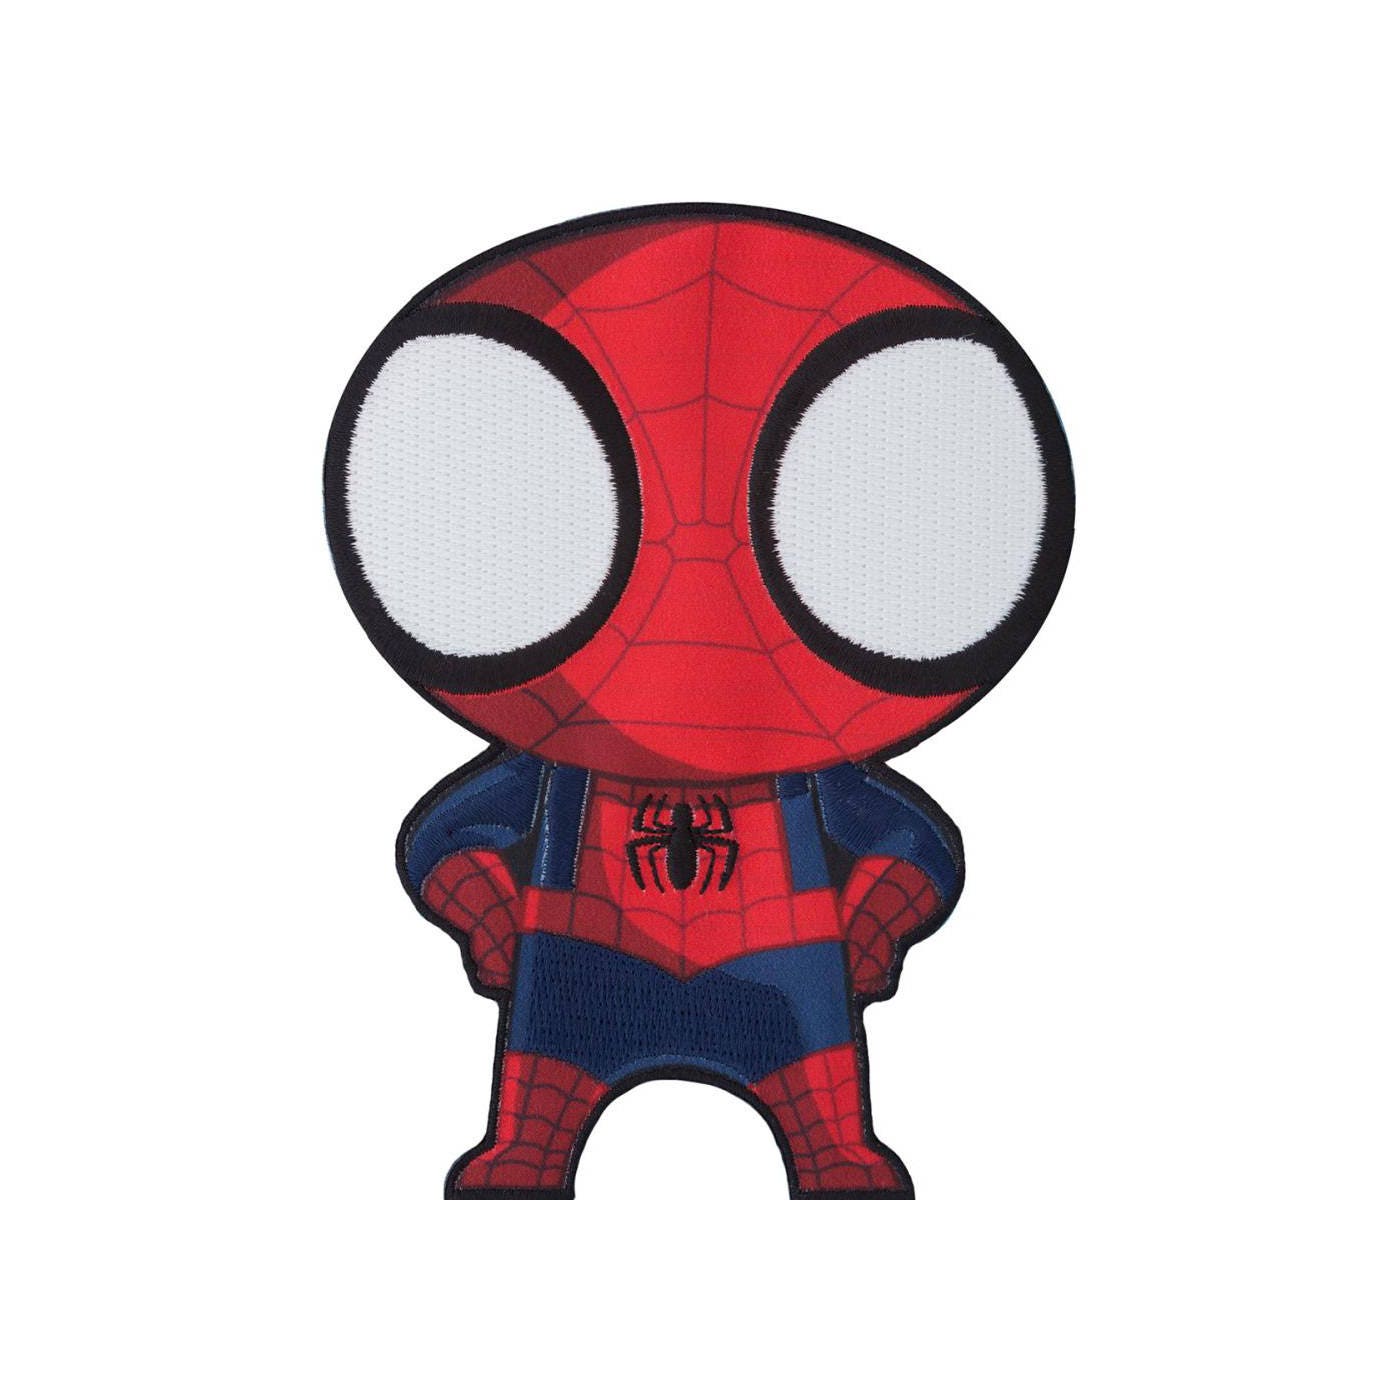 Marvel spider man патчи. Аппликация Супергерои. Железный человек паук рисунок. Iron man Patch. Супергерои без лица для фотошопа.